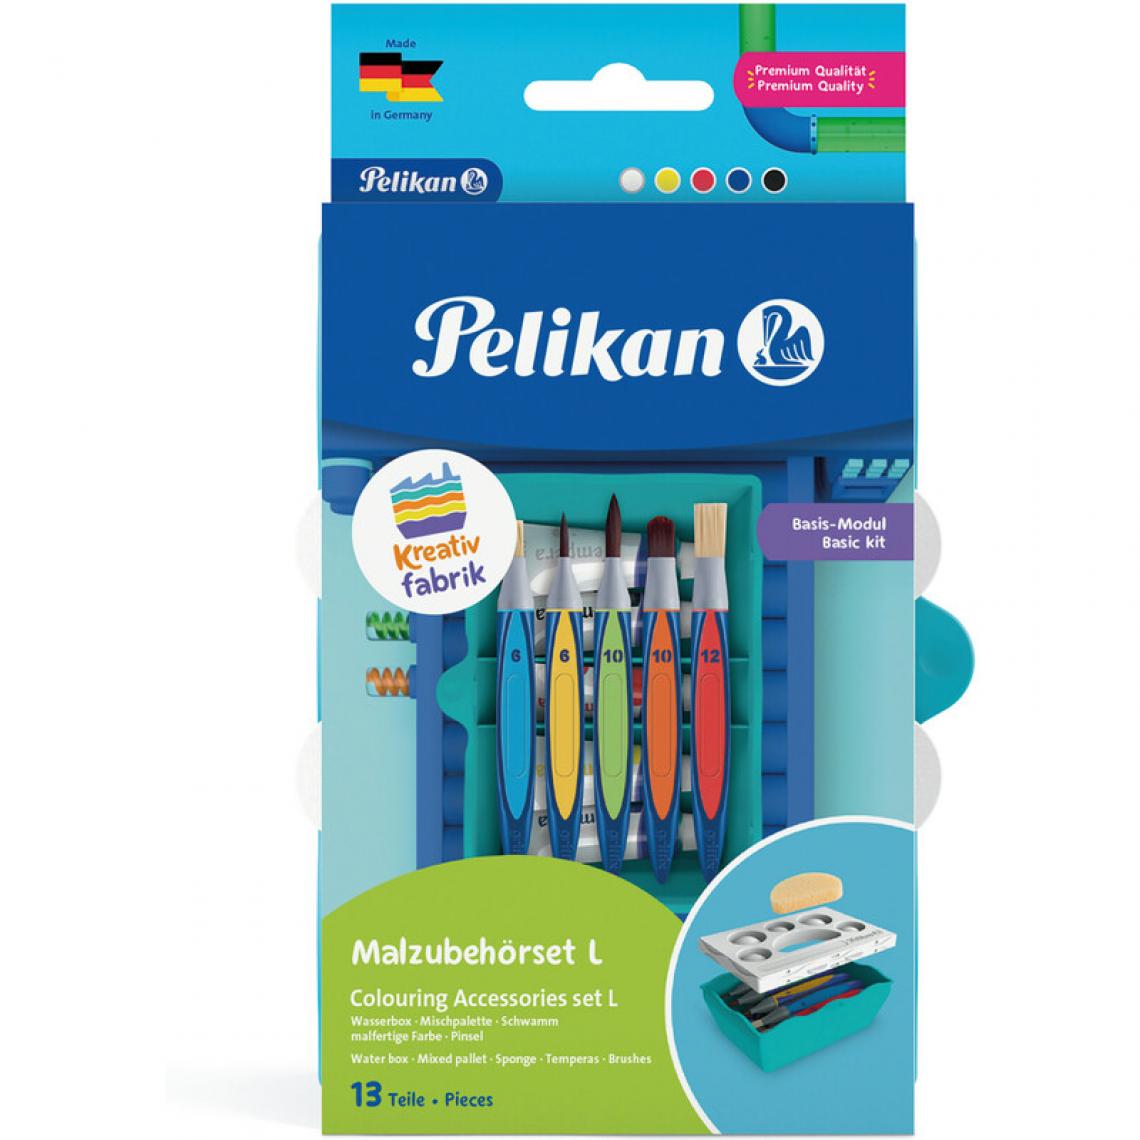 Pelikan - Pelikan Kreativfabrik Kit accessoires de peinture, 13 pièces () - Outils et accessoires du peintre